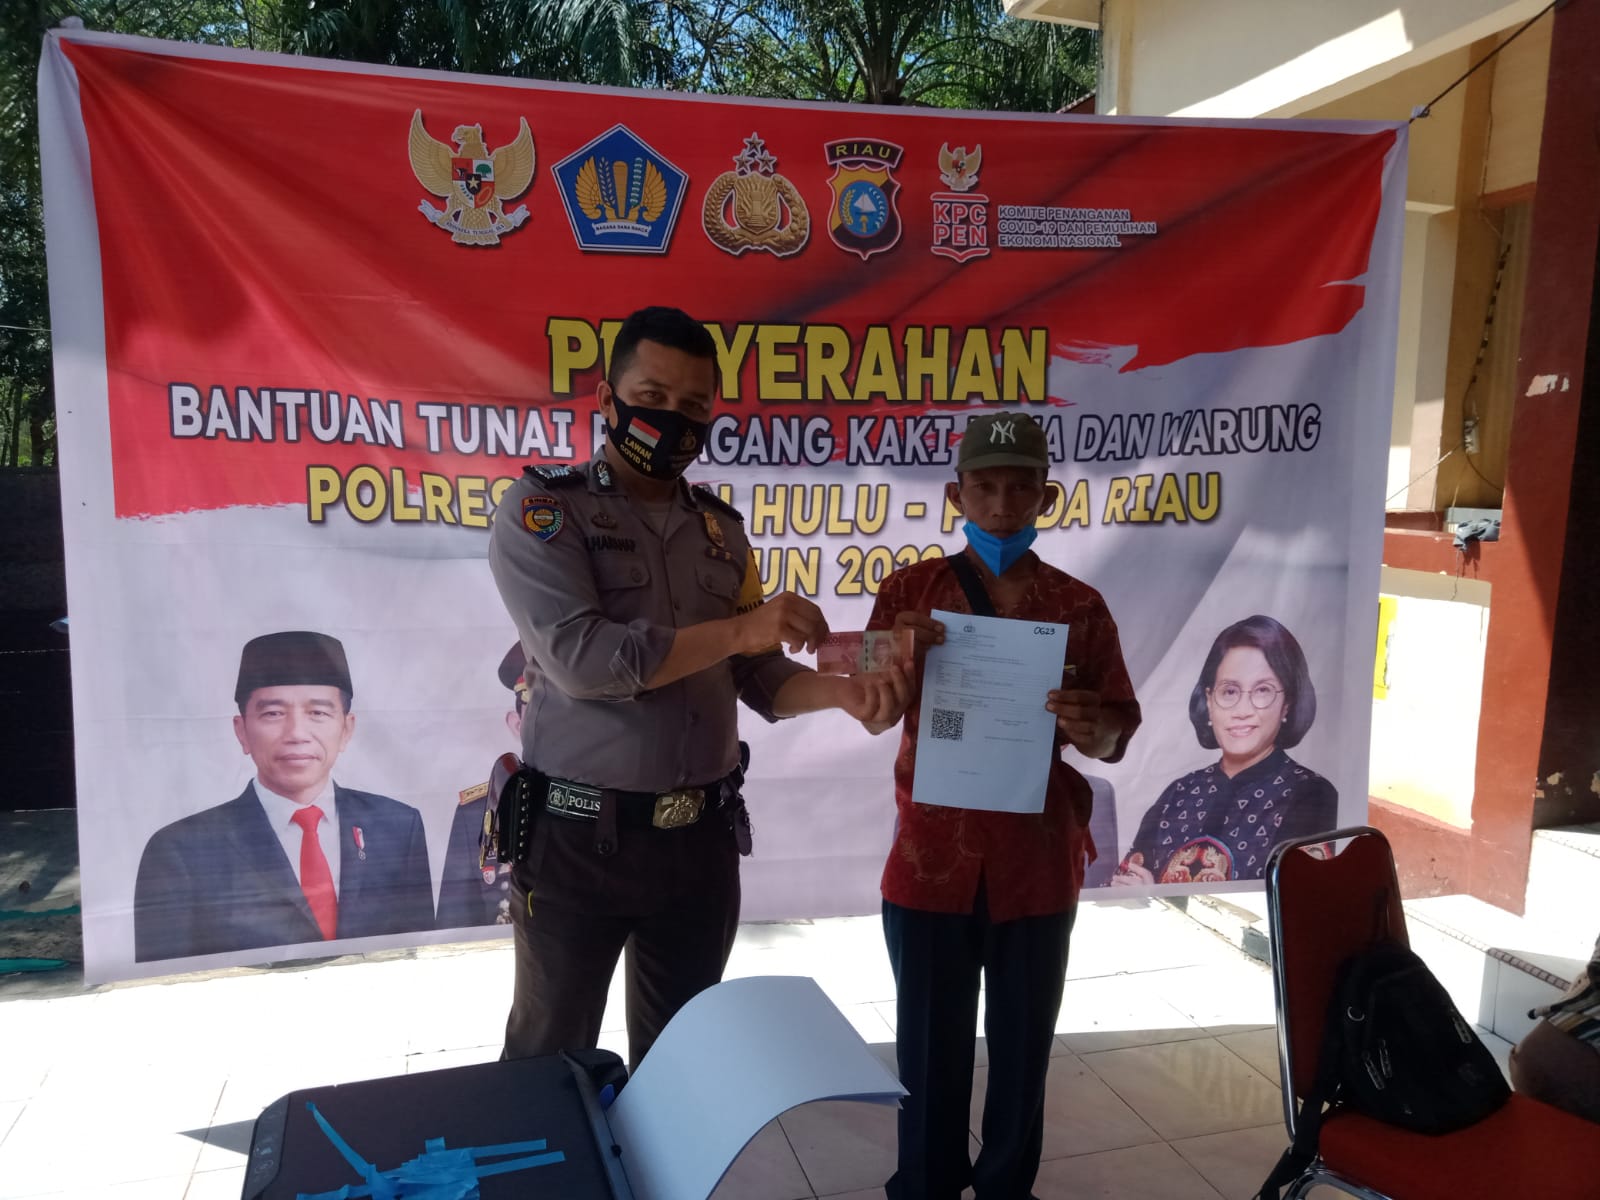 149 Warga di Kecamatan Tandun Terima Program Bantuan Tunai Pedagang Kaki Lima dan Warung